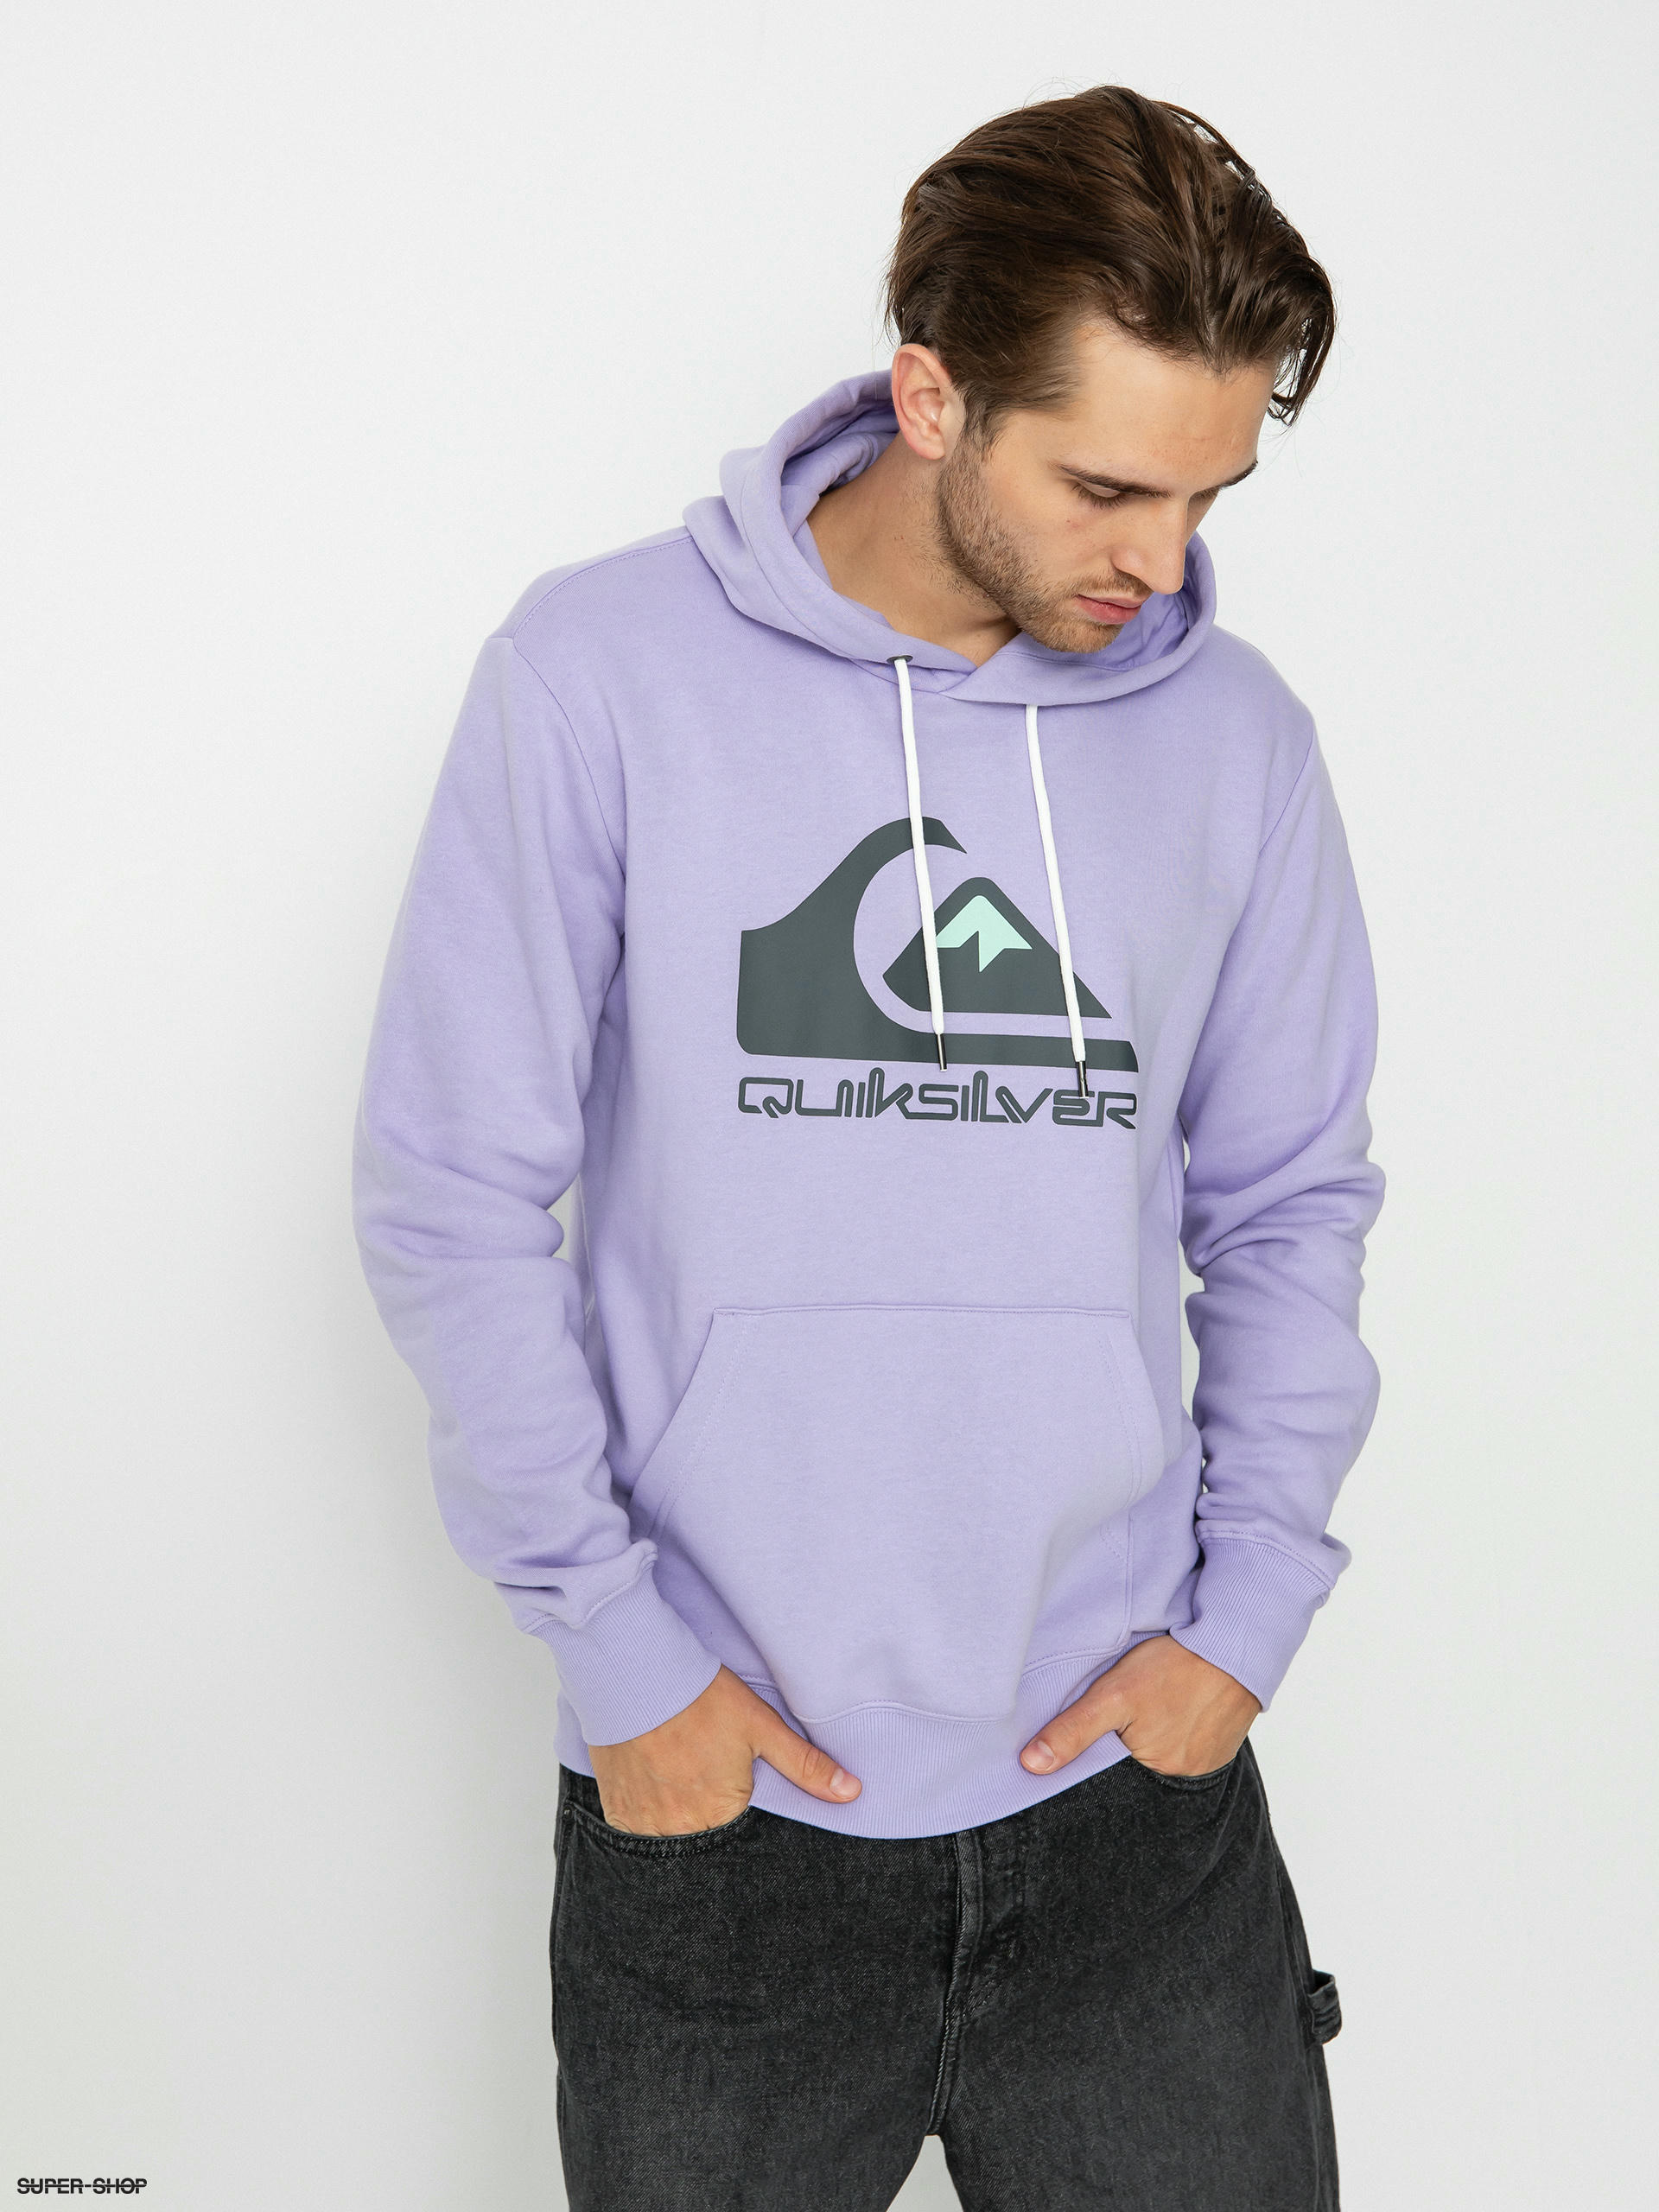 Quiksilver Big Logo HD rose) Hoodie (purple